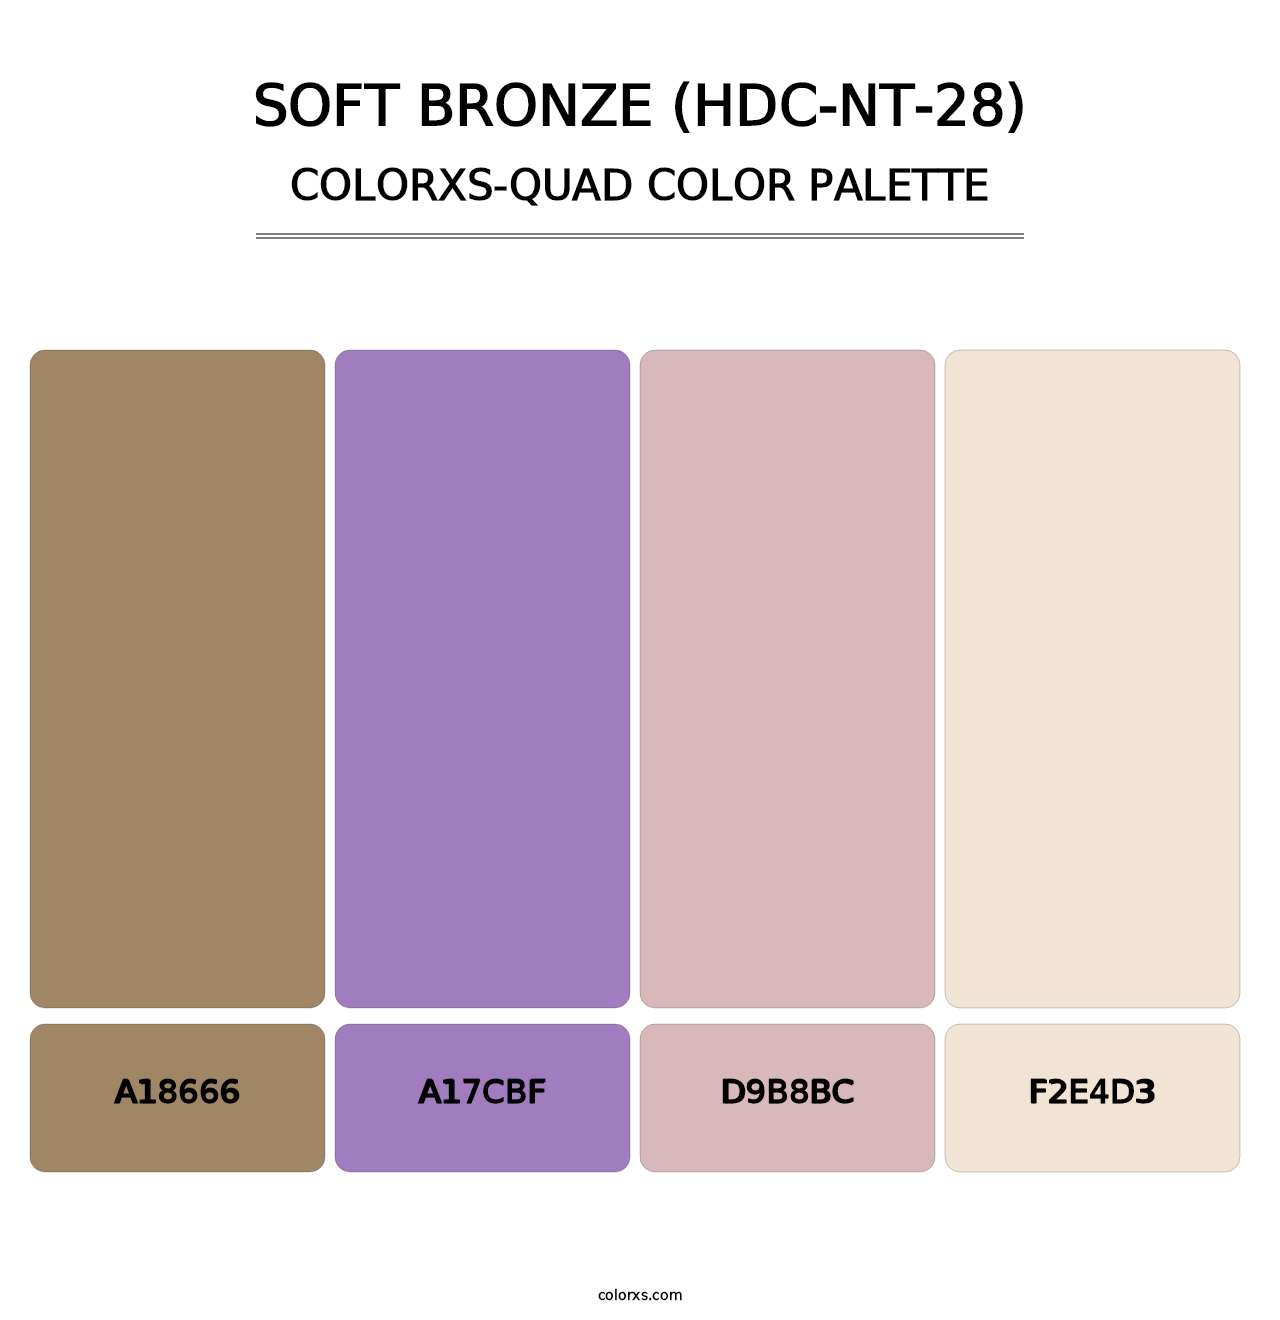 Soft Bronze (HDC-NT-28) - Colorxs Quad Palette